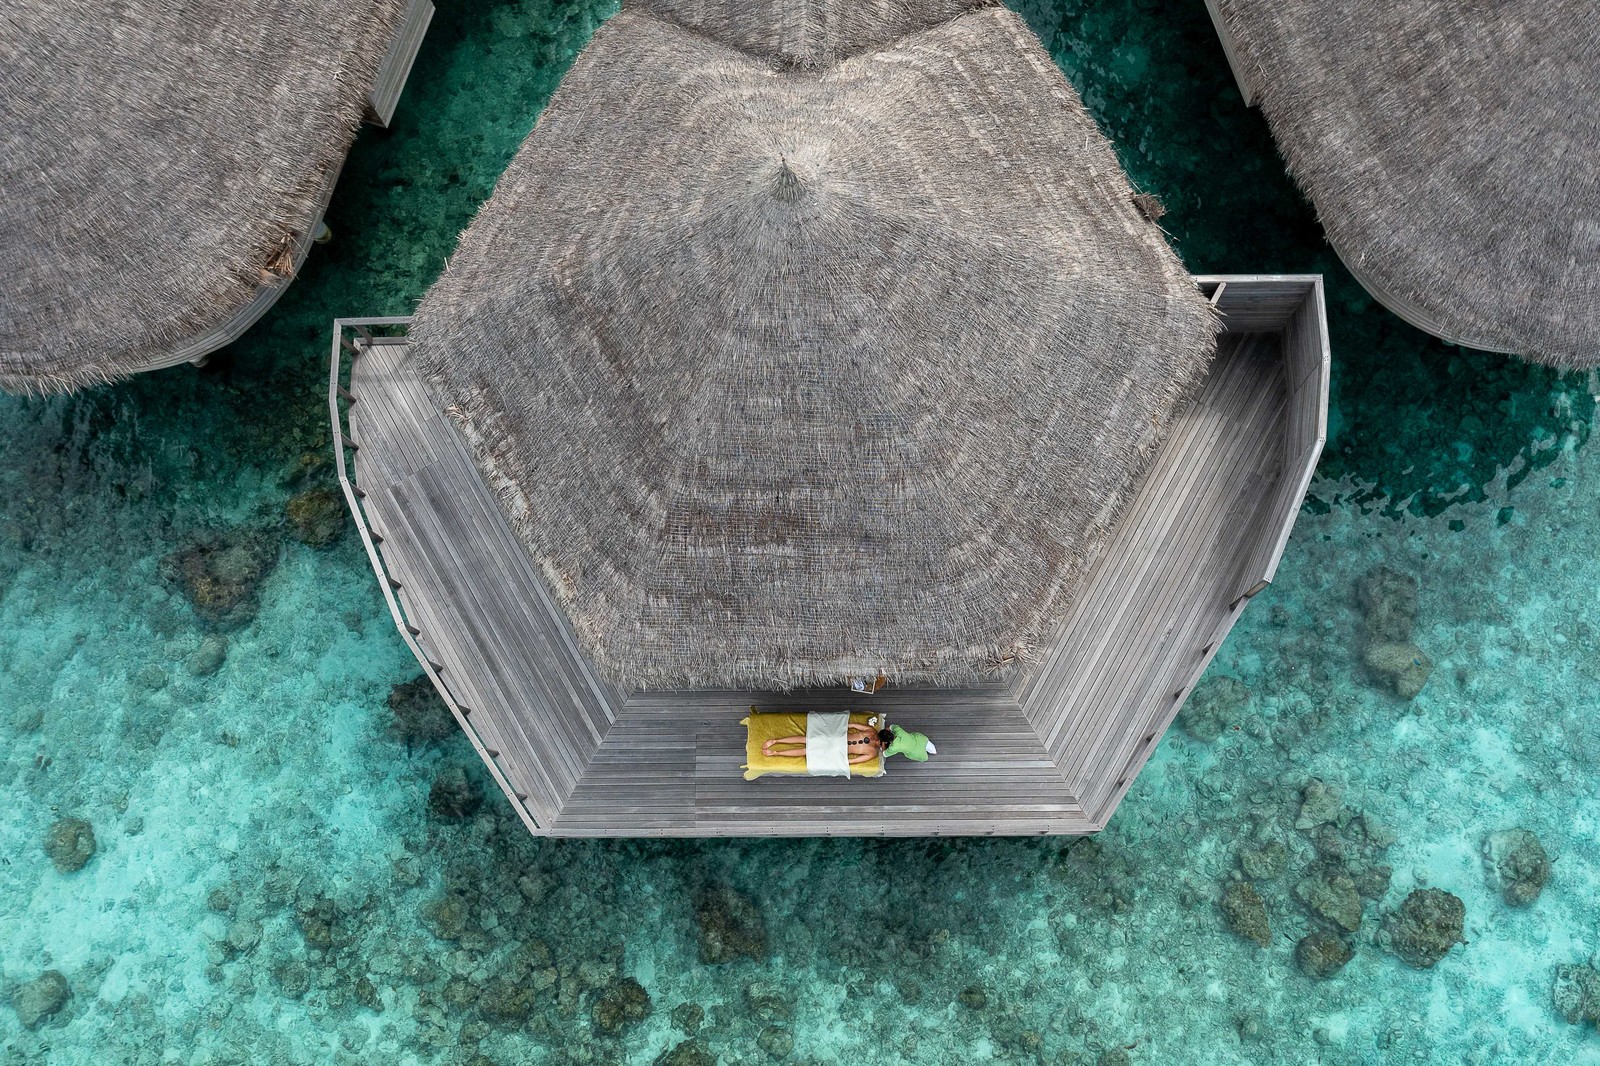 فندق "The Nautilus" رحلة فاخرة في احضان المالديف بعيدًا عن التكنولوجيا